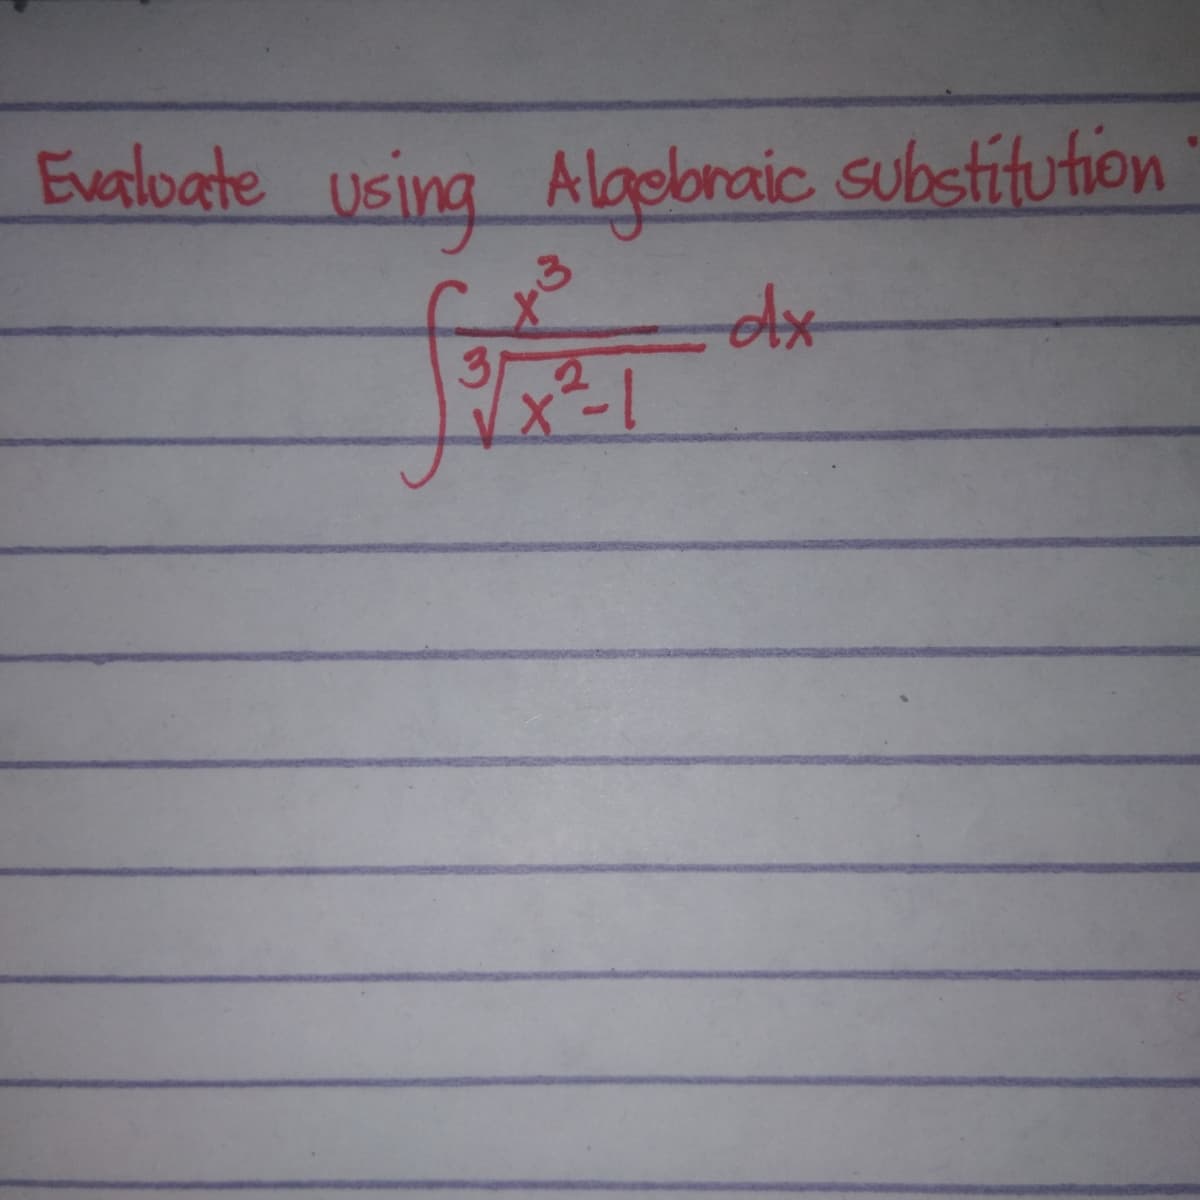 Evaloate using Alapbraic substitution
x²-1
